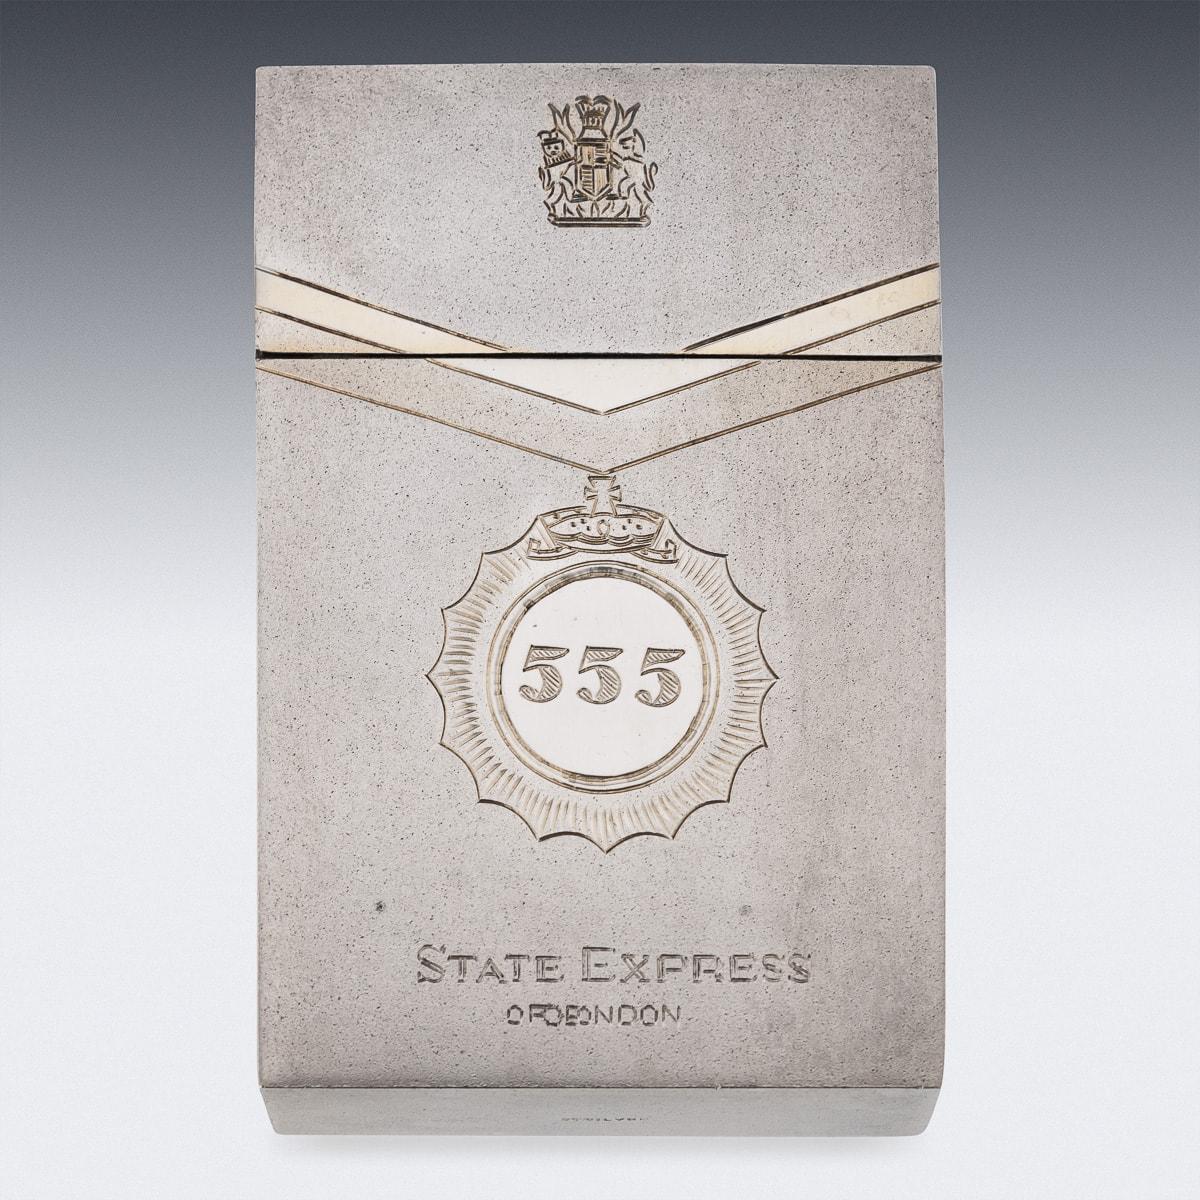 Eine hervorragende Zigarettendose aus massivem Silber des 20. Jahrhunderts von 555 State Express of London. Die Schachtel ist im Stil einer Zigarettenschachtel gestaltet, das eingravierte Dekor auf der Vorderseite der Schachtel zeigt das 555 State